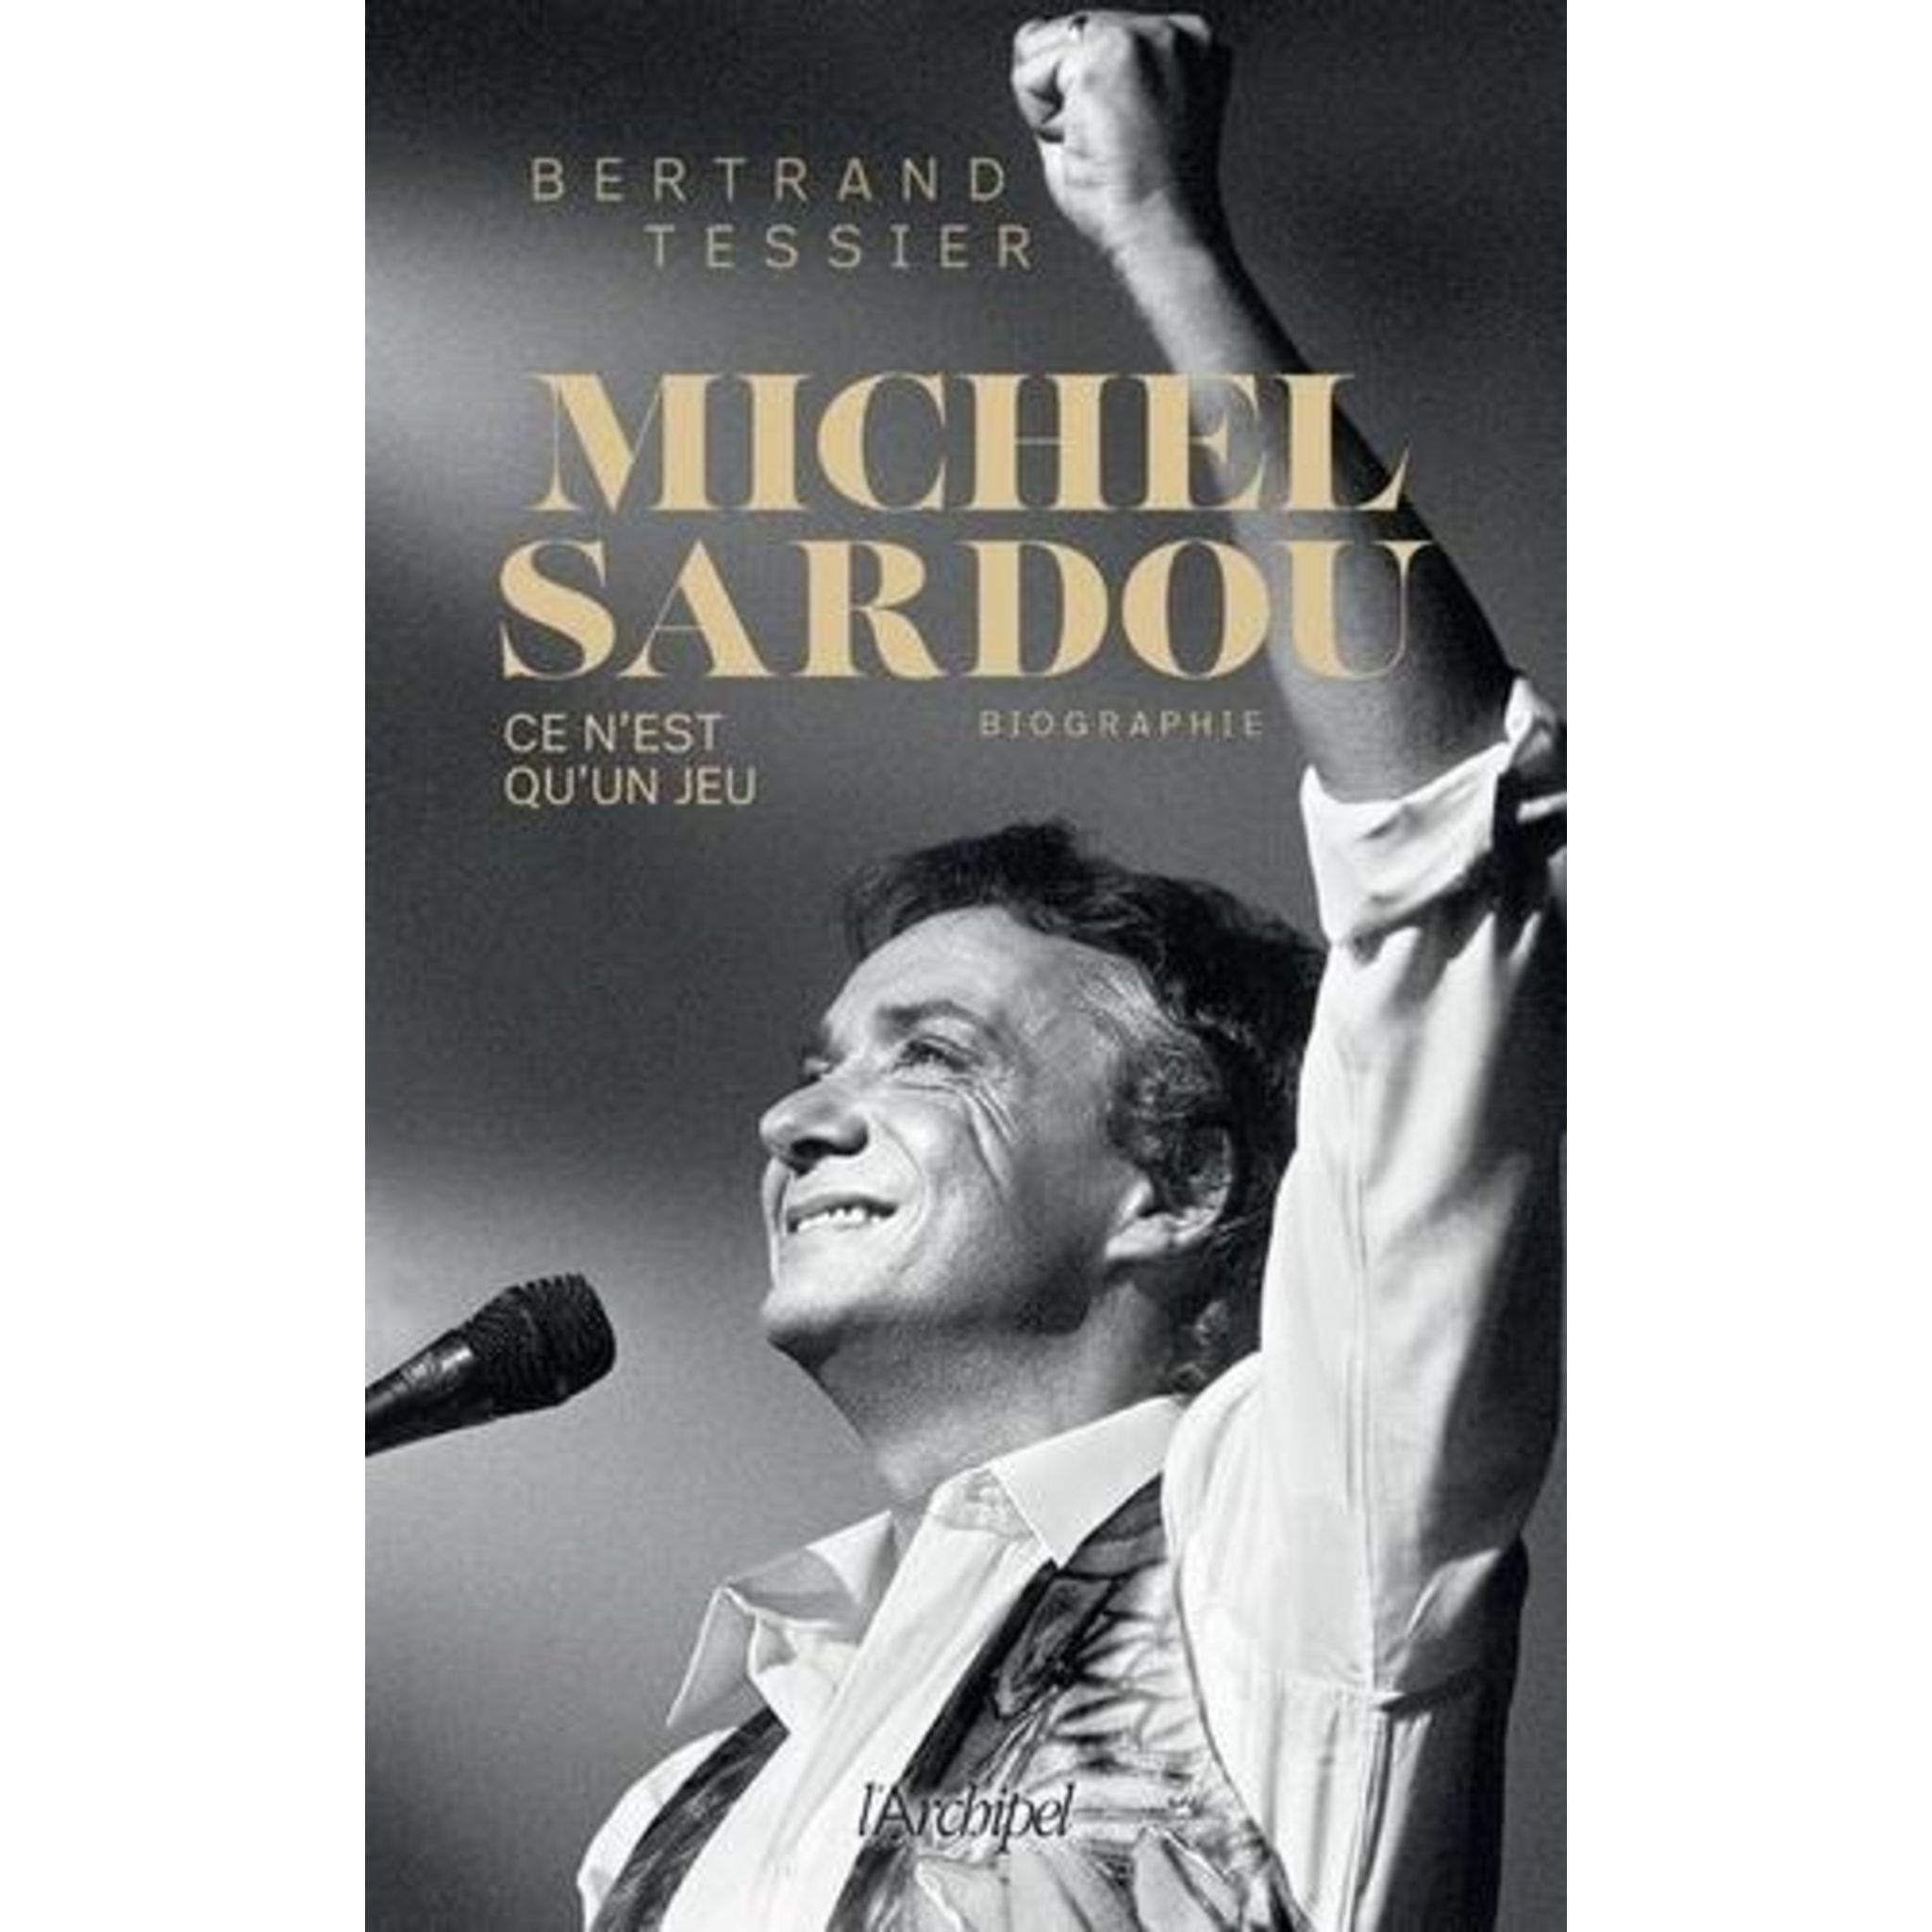  Michel Sardou: la biographie la plus exhaustive, à paraître  pour la nouvelle tournée du chanteur - Tessier, Bertrand - Livres